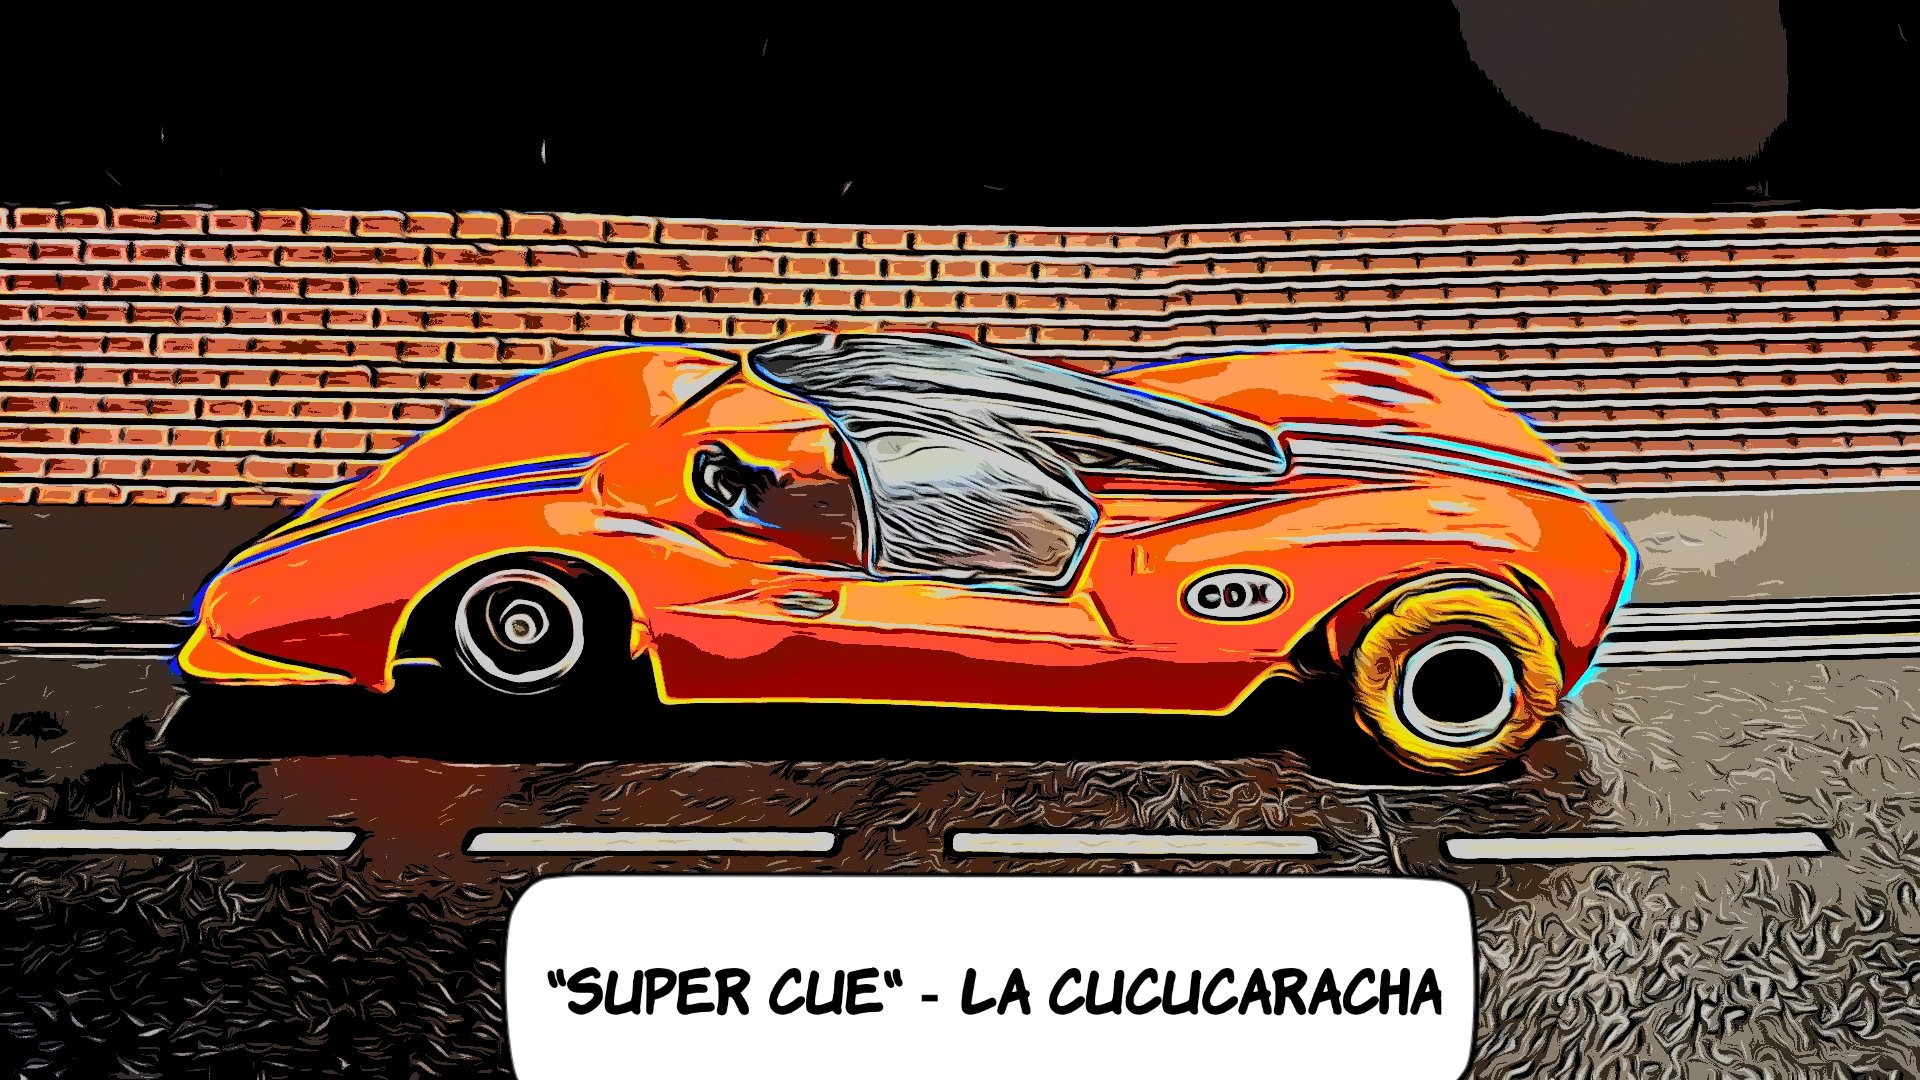 * SOLD * *SALE PRICE* VERY RARE COX Super La Cu Cucaracha “Super Cuc” 1:24 Scale Slot Car